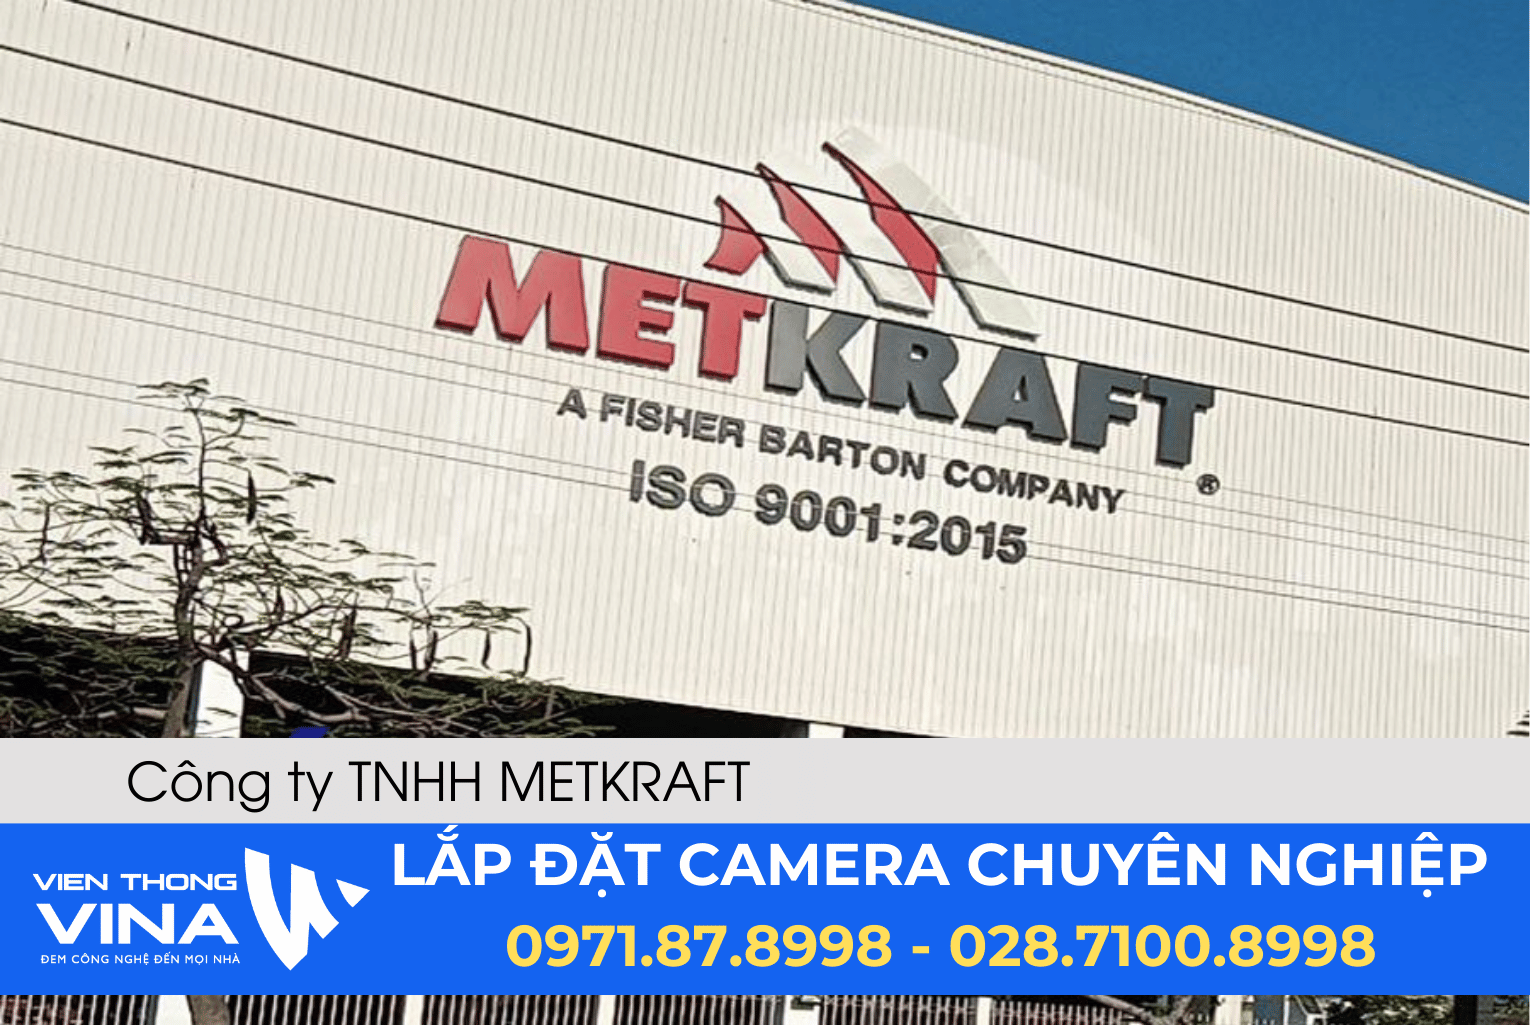 Lắp đặt hệ thống camera quan sát và hệ thống mạng tại Công ty TNHH METKRAFT